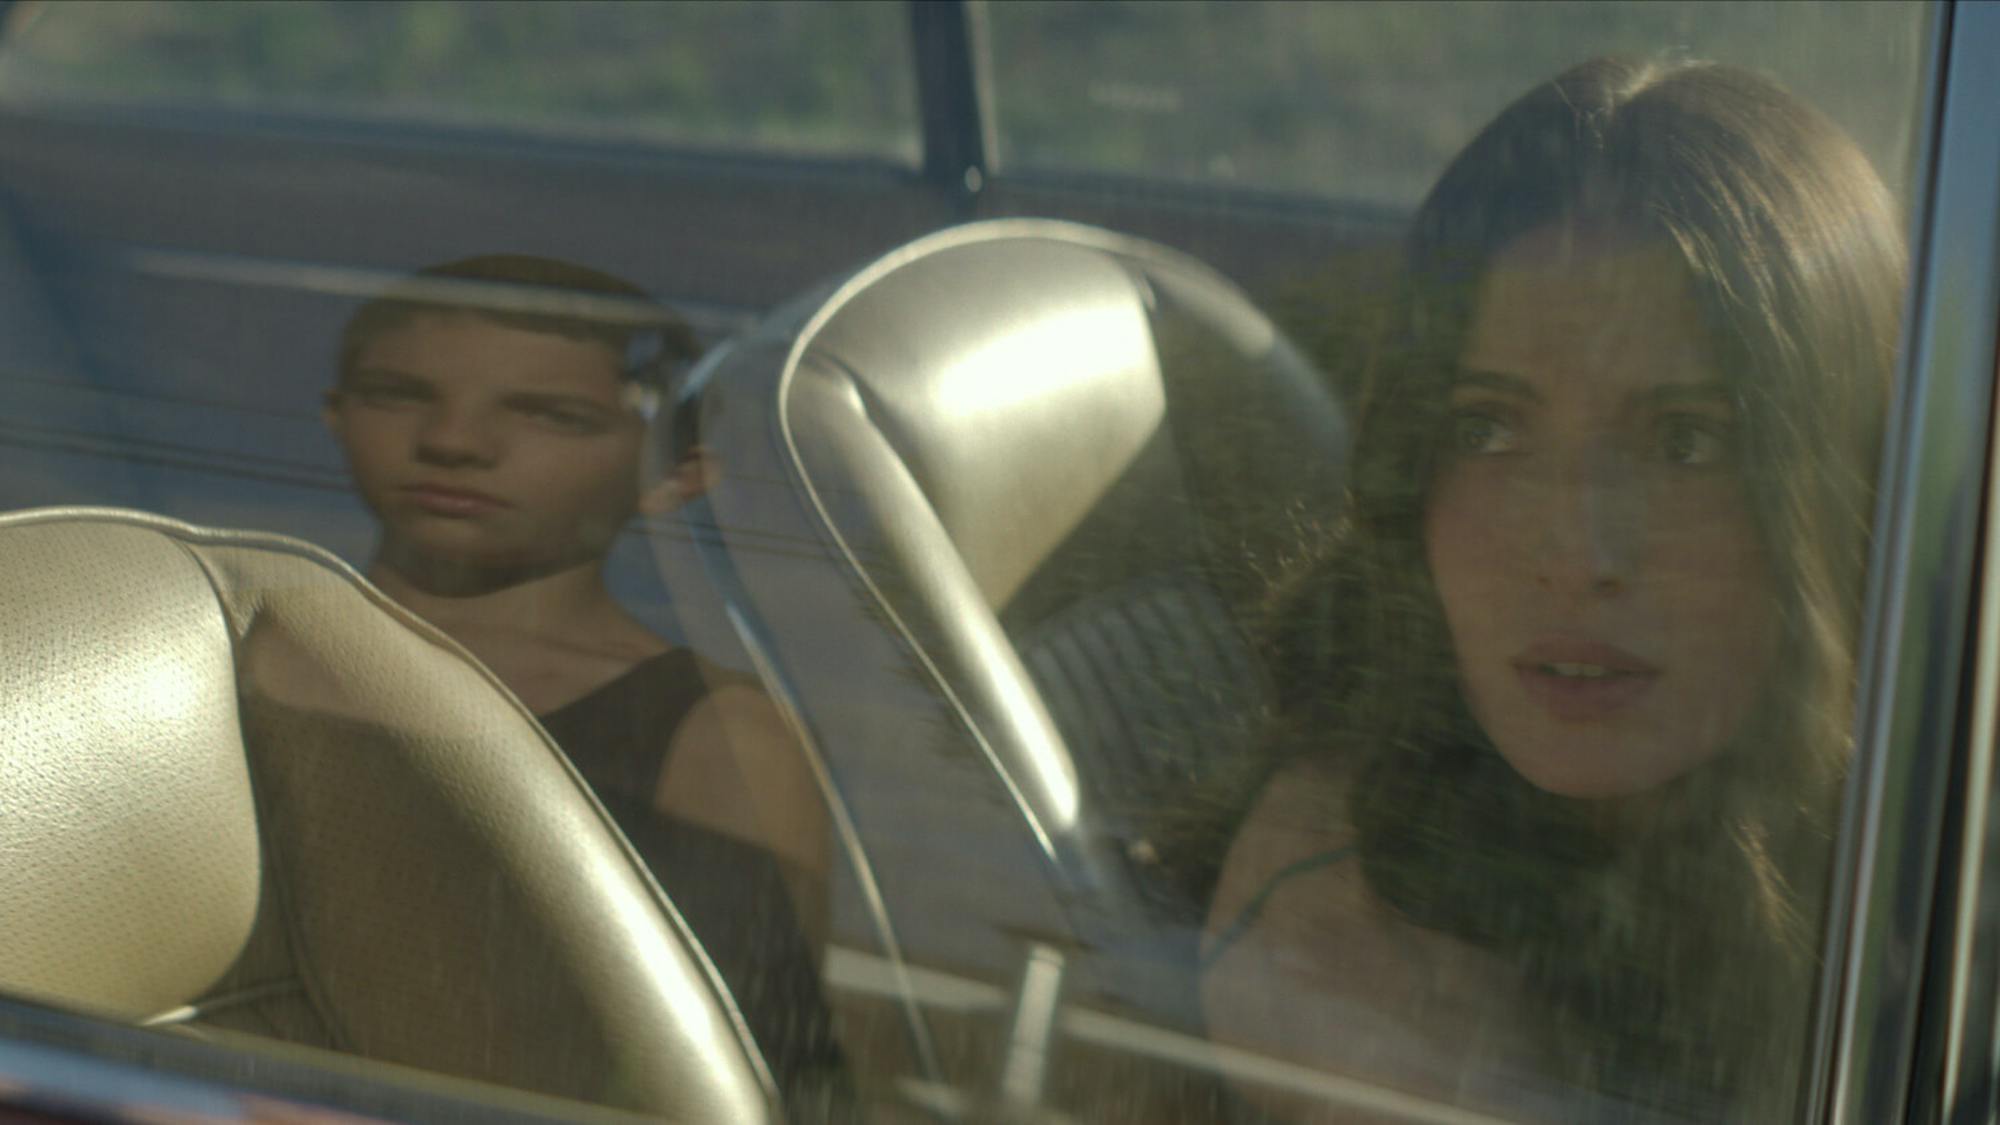 David (Emilio Vodanovich) y Amanda (María Valverde) se miran a través de la ventilla de un automóvil. David aparece como un reflejo en la ventana, y Amanda parase estar nerviosa.